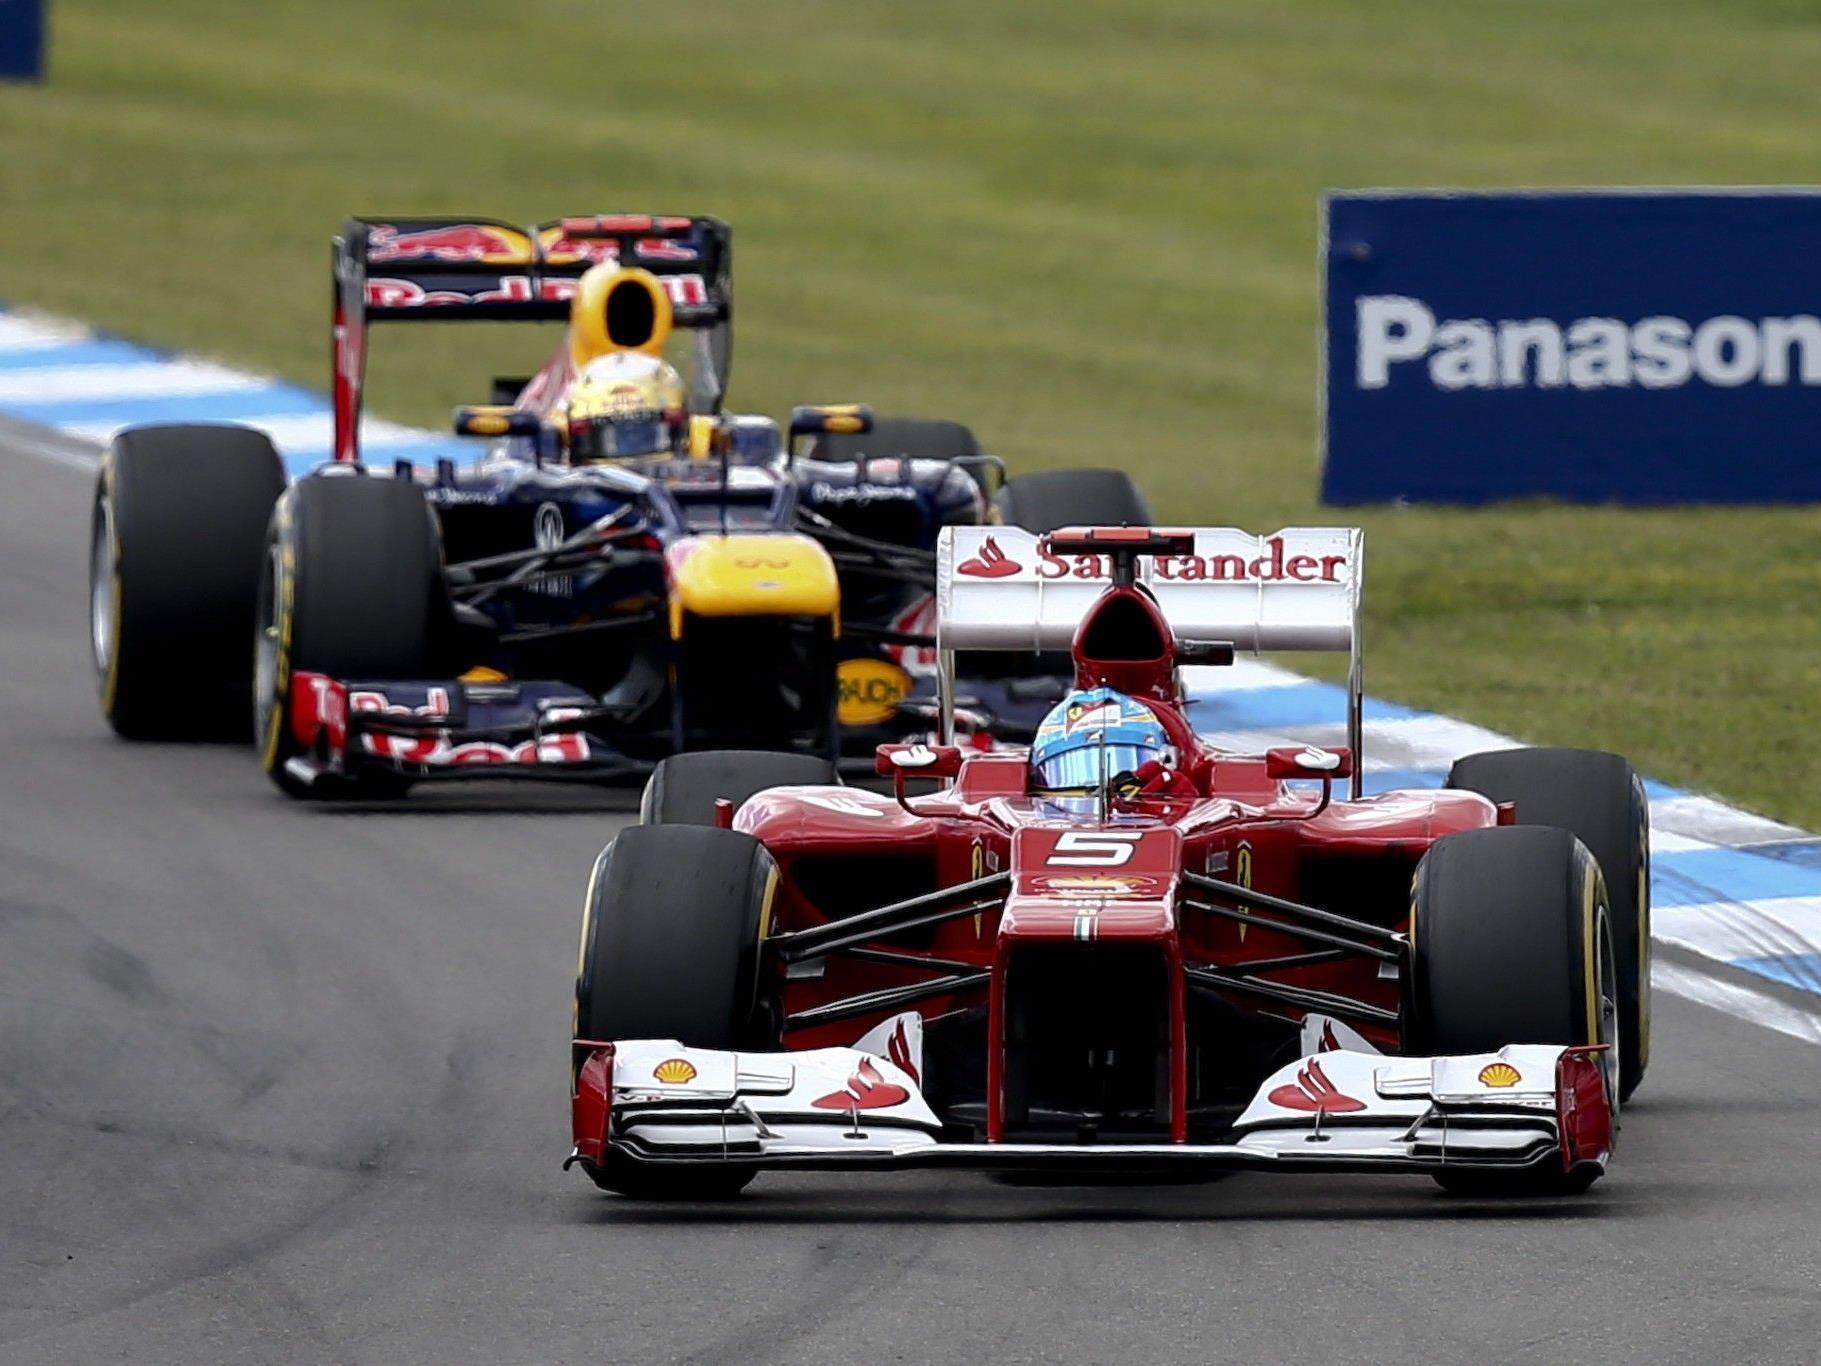 Showdown in Interlagos. Man darf gespannt sein ob sich Vettel und Alonso auf der Strecke begegnen.